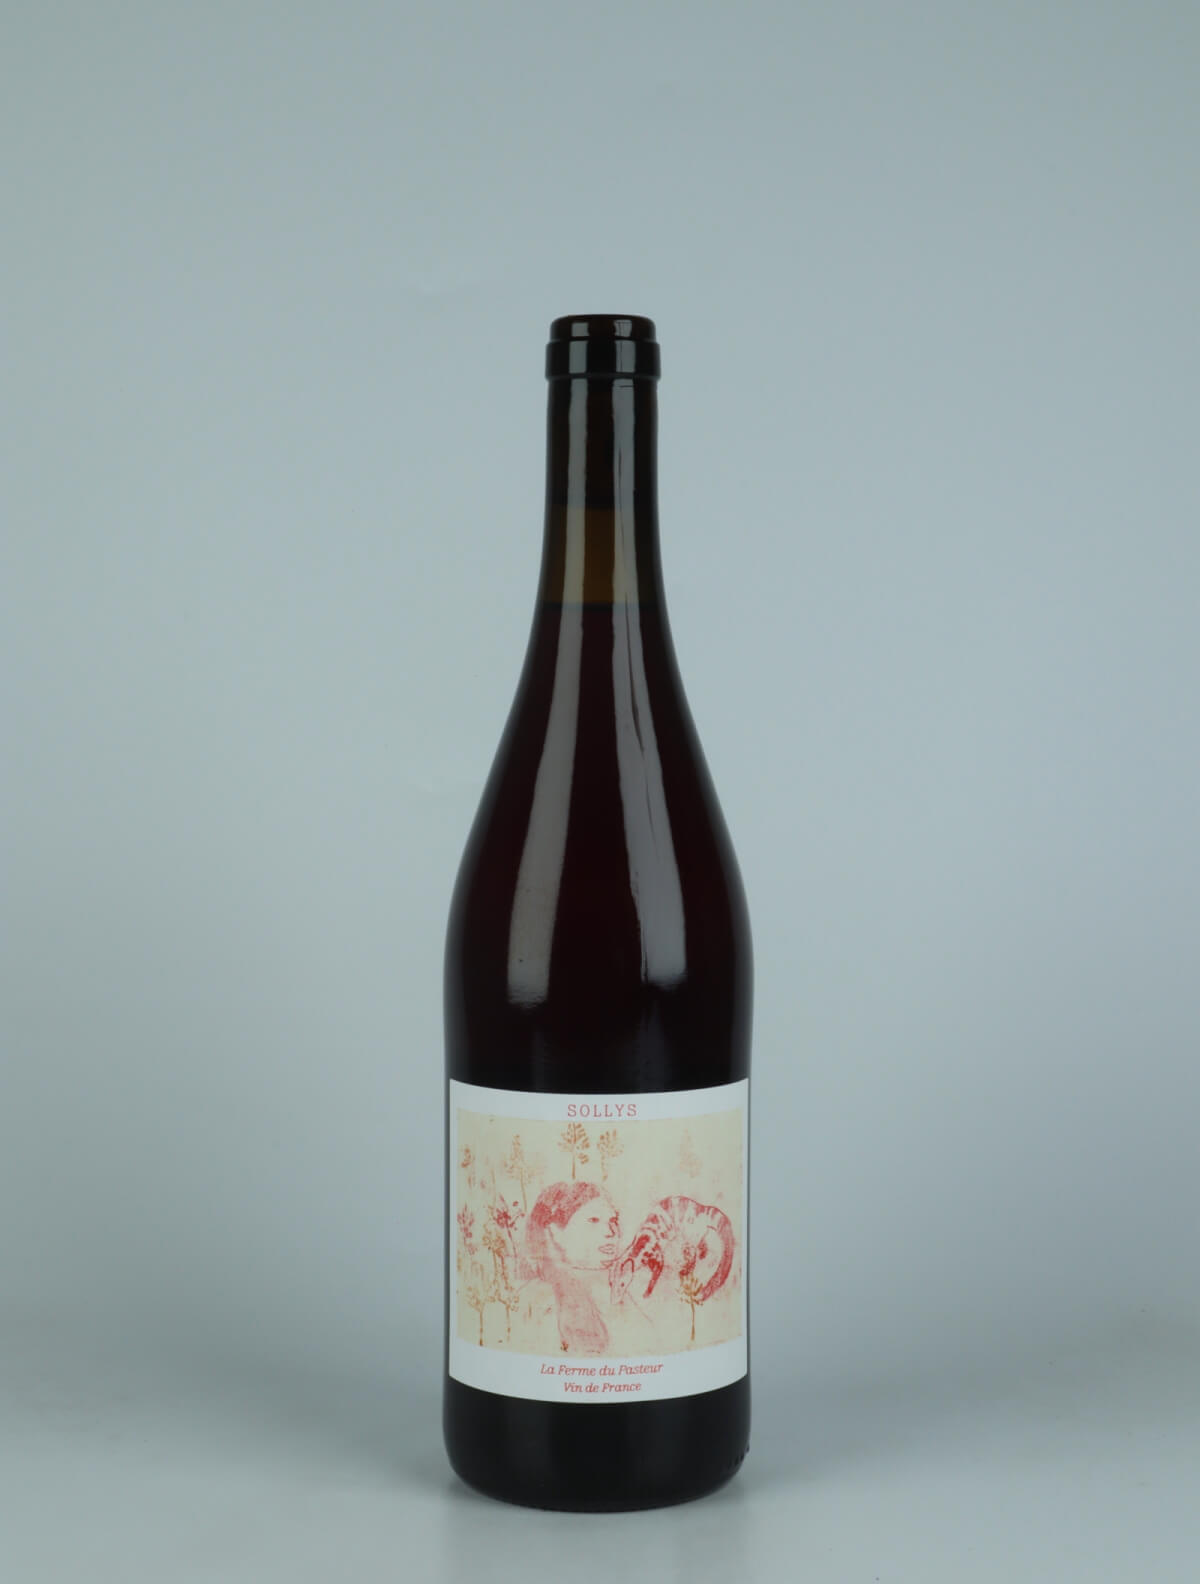 A bottle 2022 Sollys Red wine from La Ferme du Pasteur, Rhône in France